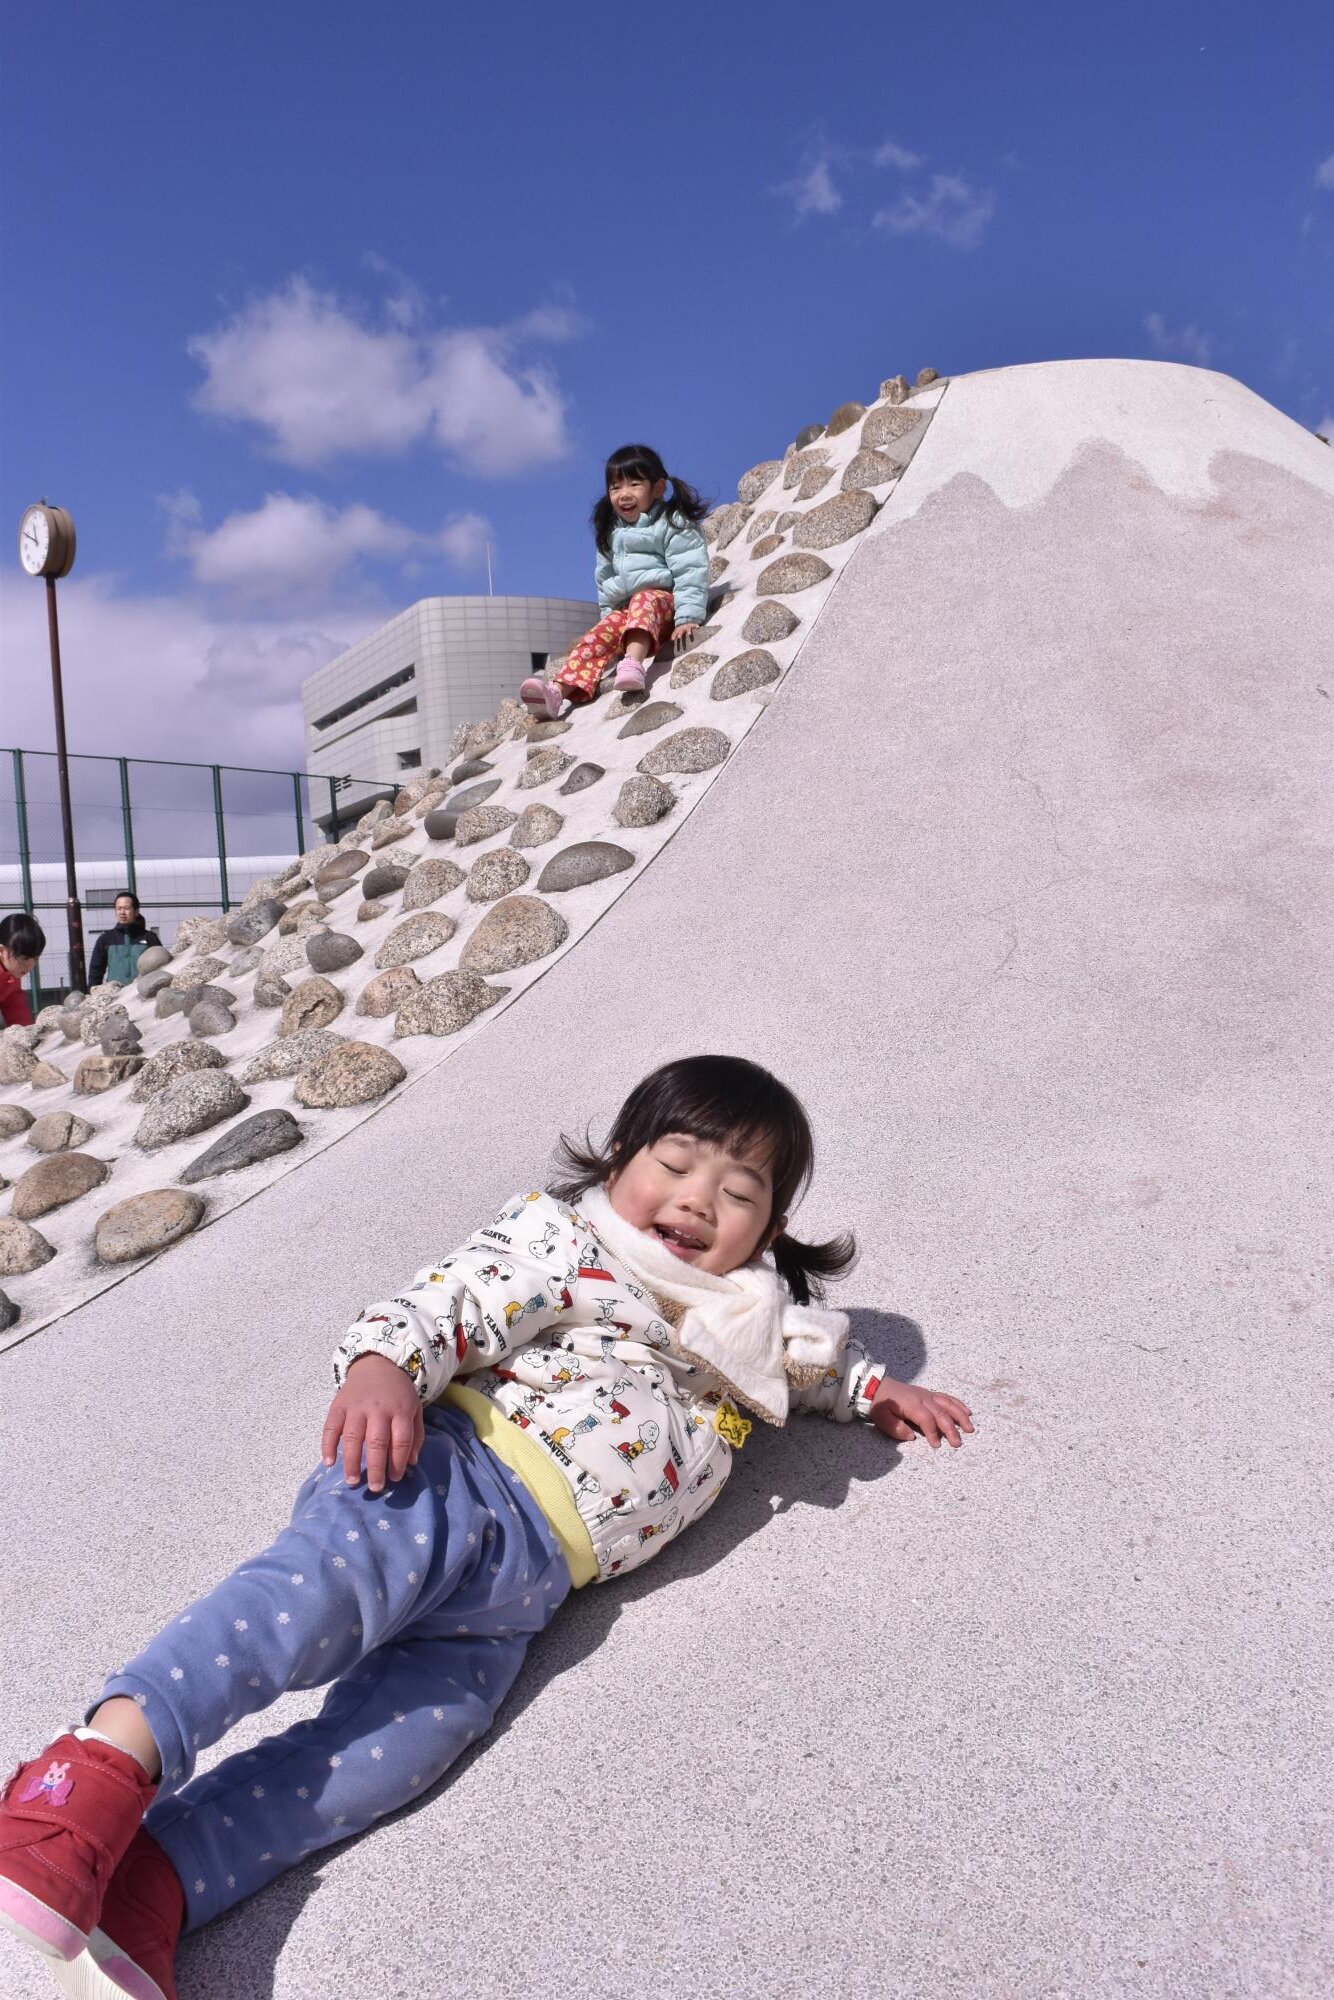 小さな子どもも夢中で遊ぶ。名古屋市によると、滑り面がなだらかな斜面になっているため落下の危険がなく、過去に大きな怪我や事故の報告は届いていないという